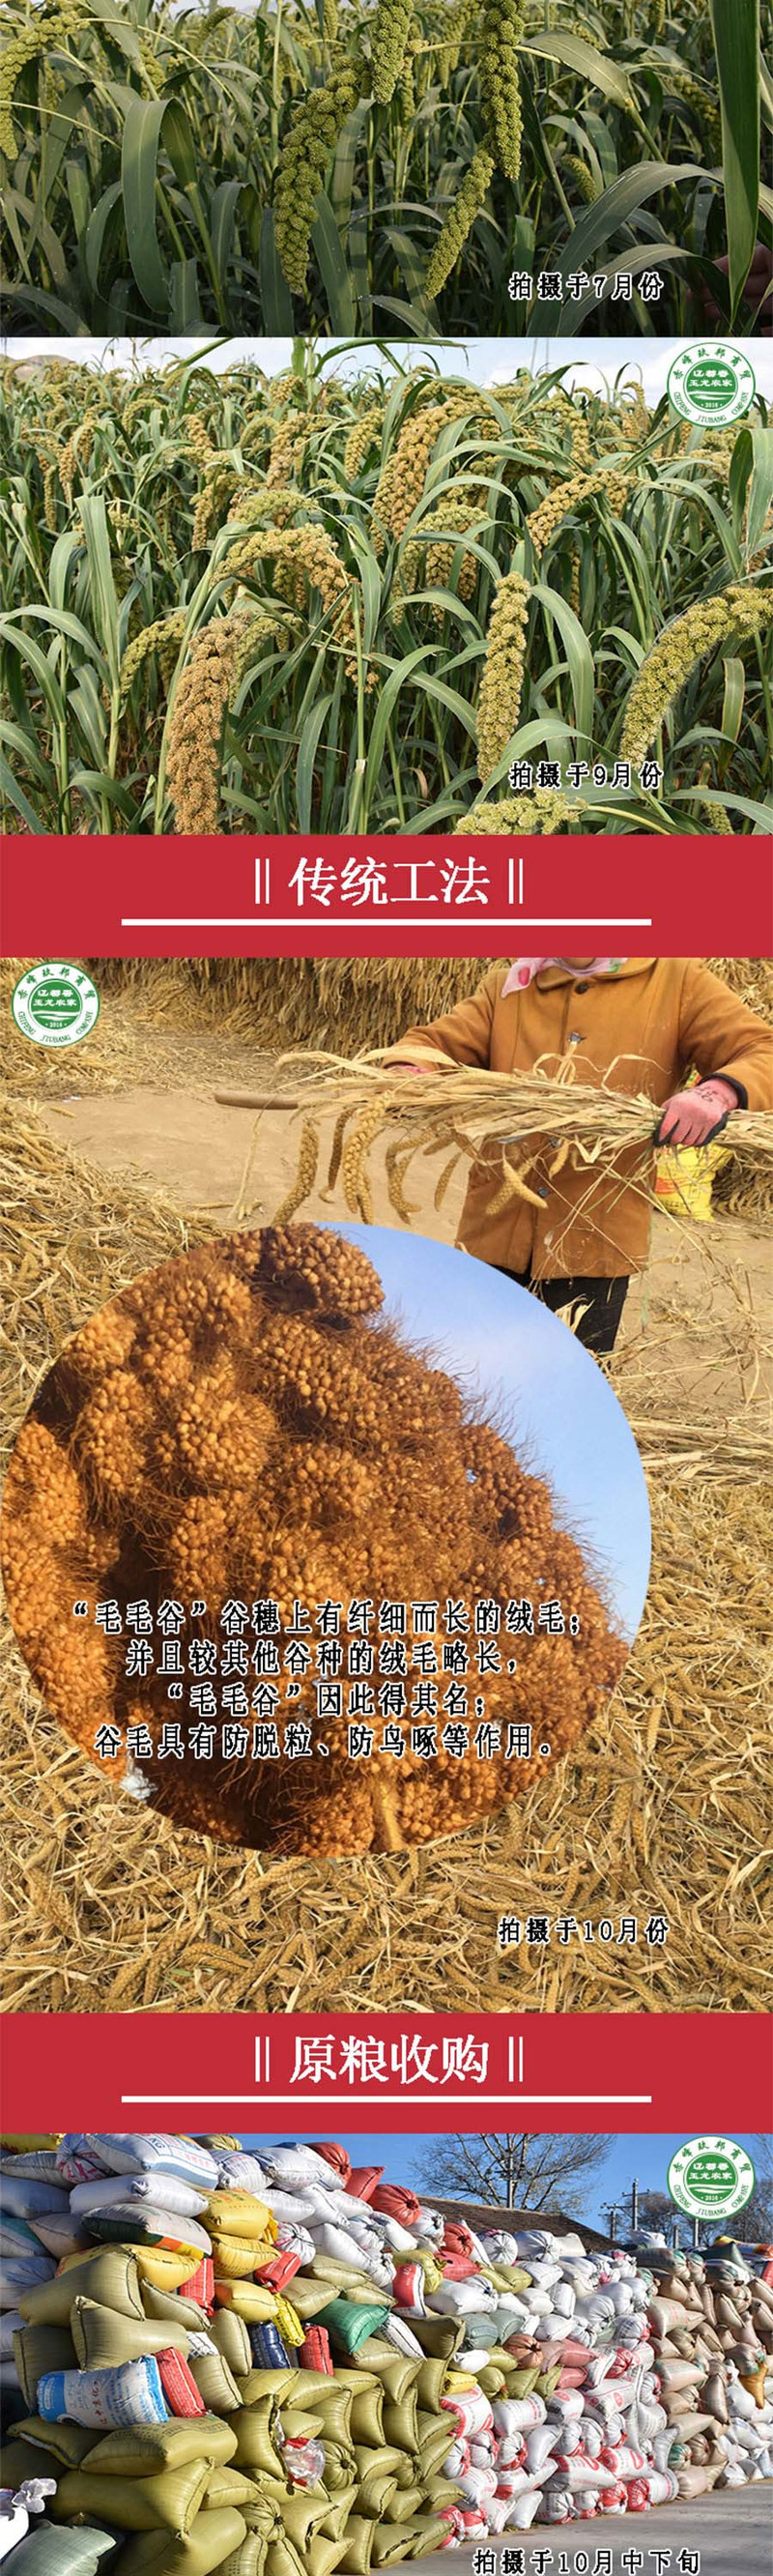 内蒙古赤峰黄小米500g袋装 毛毛谷小米 粥香糯粘稠 有米油 精选好米